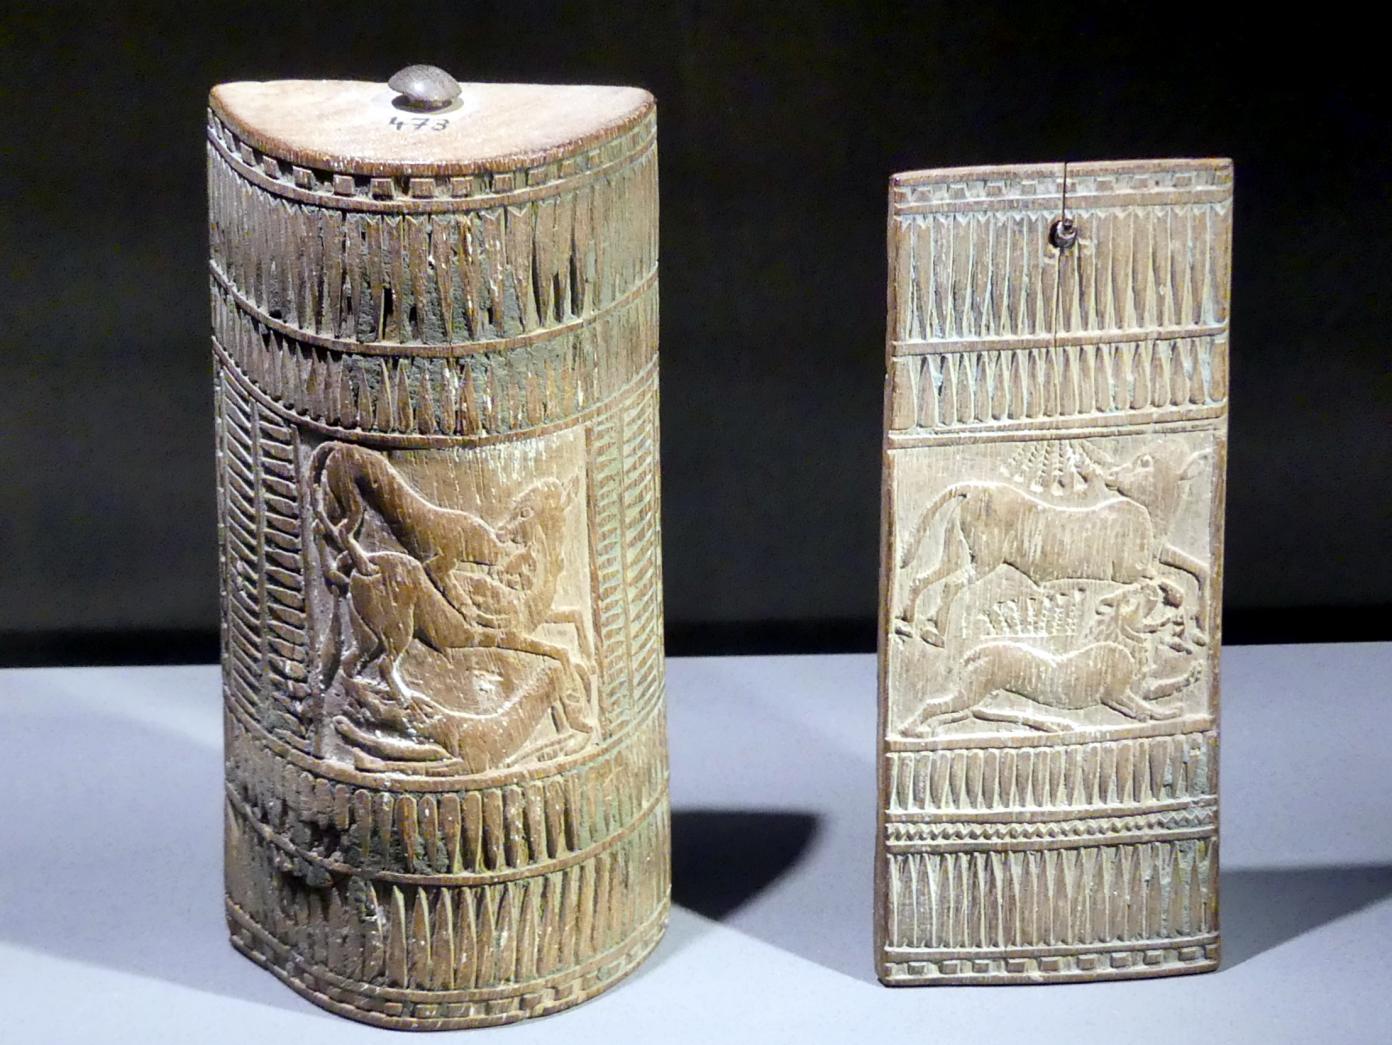 Kosmetikkästchen, 18. Dynastie, Undatiert, 1350 v. Chr.